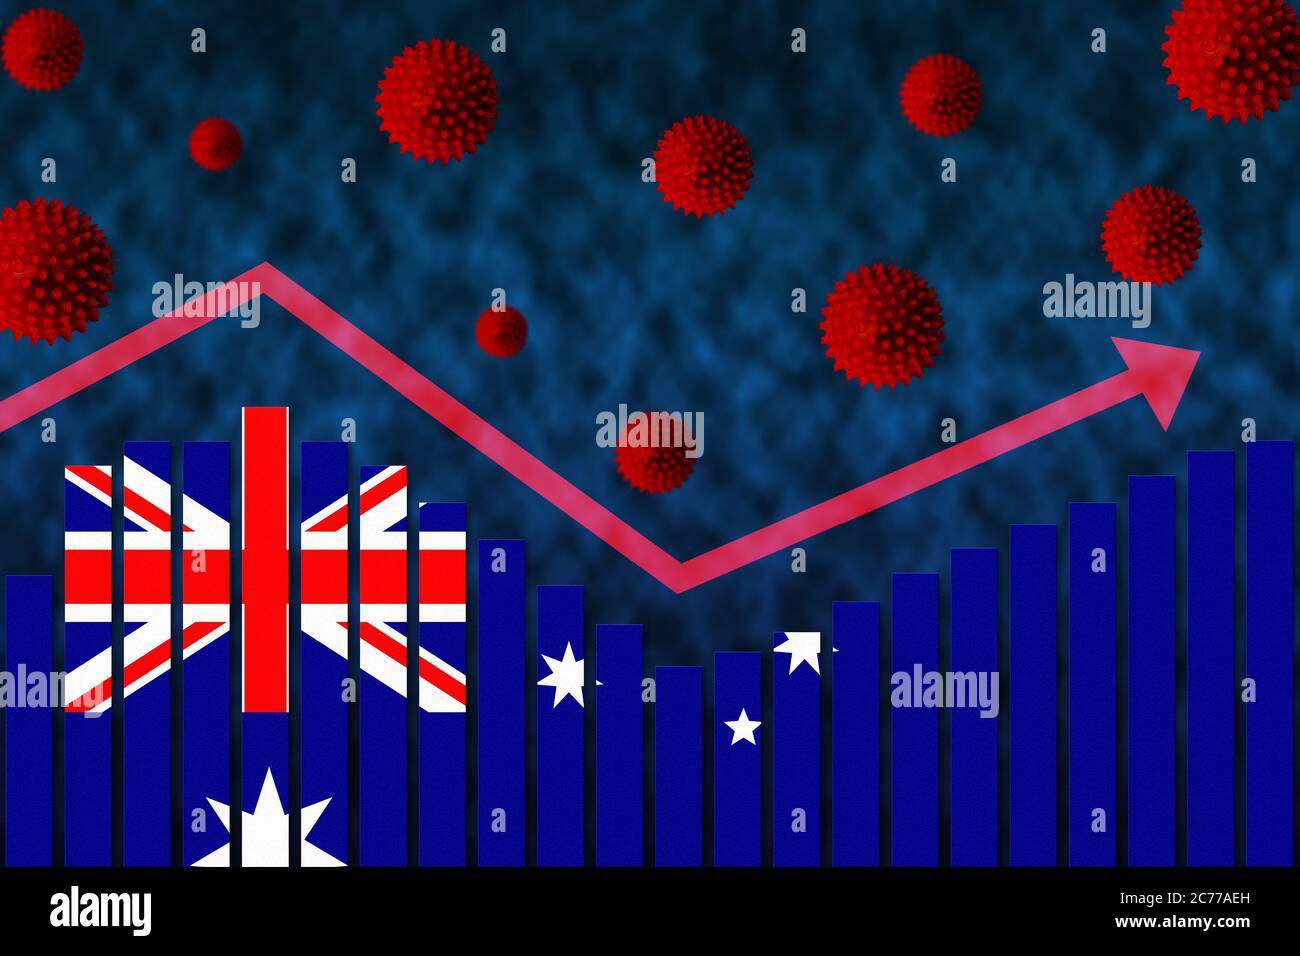 Bandiera dell'Australia sul concetto di grafico a barre di casi di infezione da coronavirus COVID-19 secondo onda dopo la prima onda illustrata da grafici e simboli del virus Foto Stock